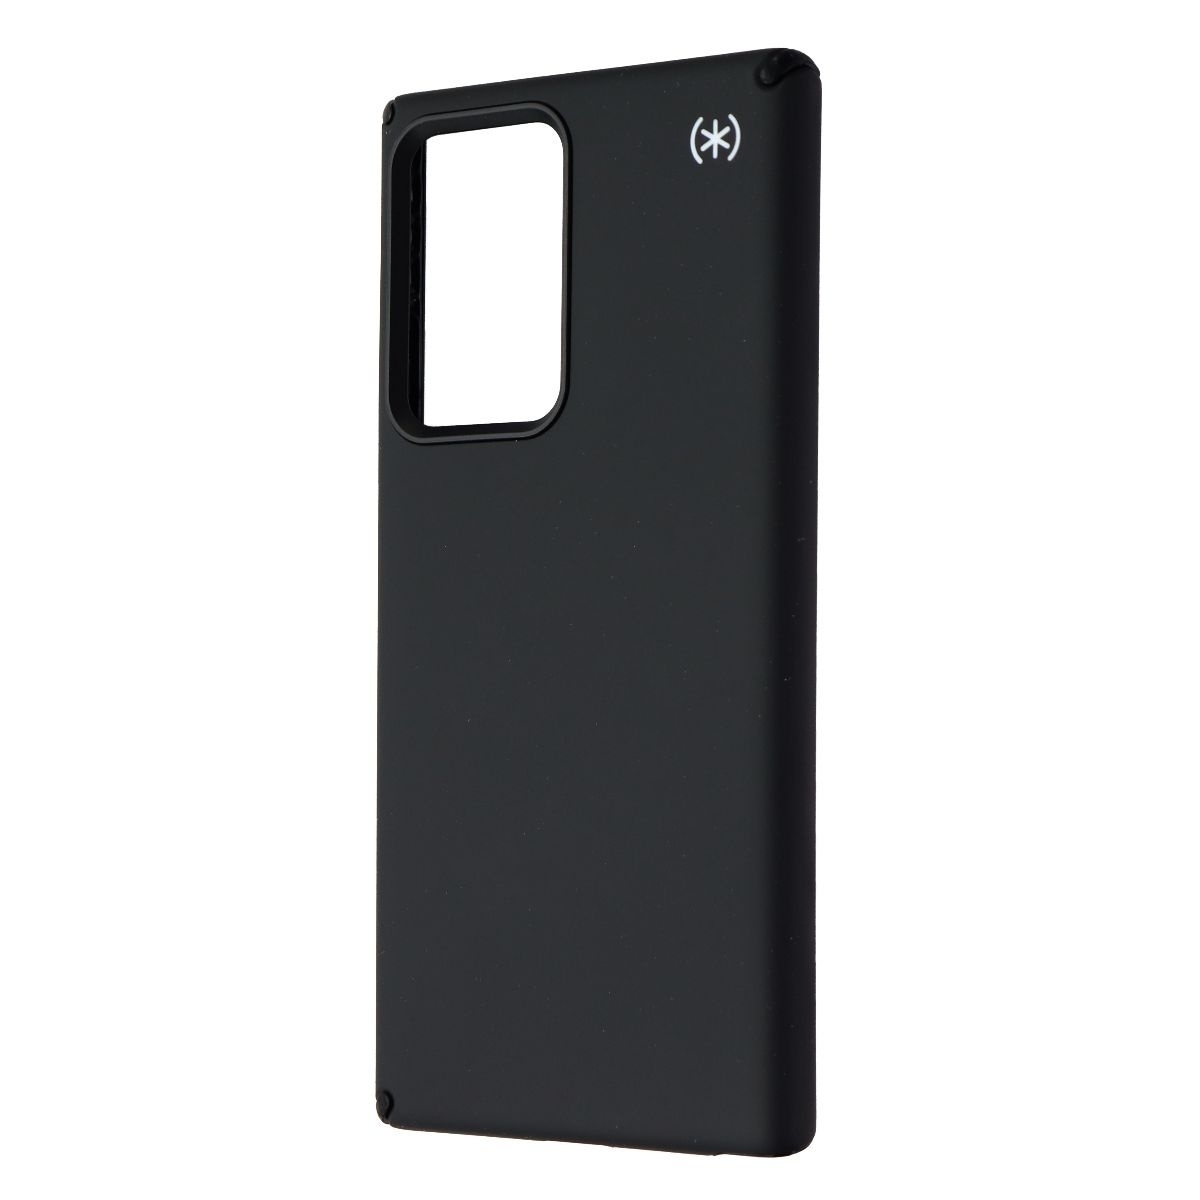 Speck Presidio2 Pro Series Case For Samsung Note20 Ultra - Black/Black/White